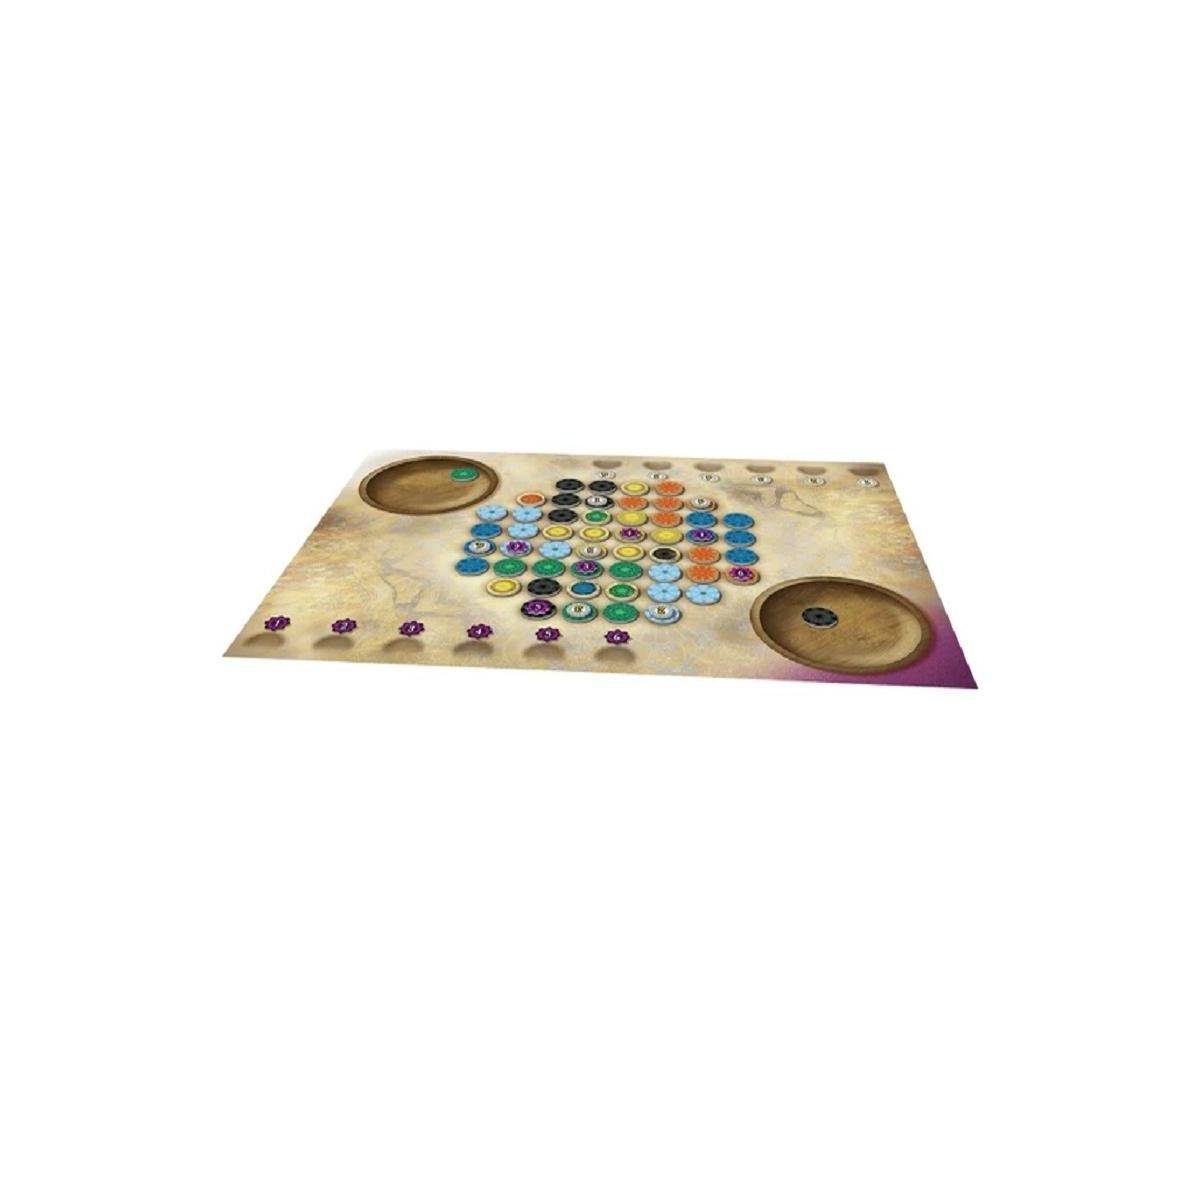 LOOD0054 für... - Mandala Lookout-Games Spiel, Brettspiel, Patterns: Ein Familienspiel Spiel,